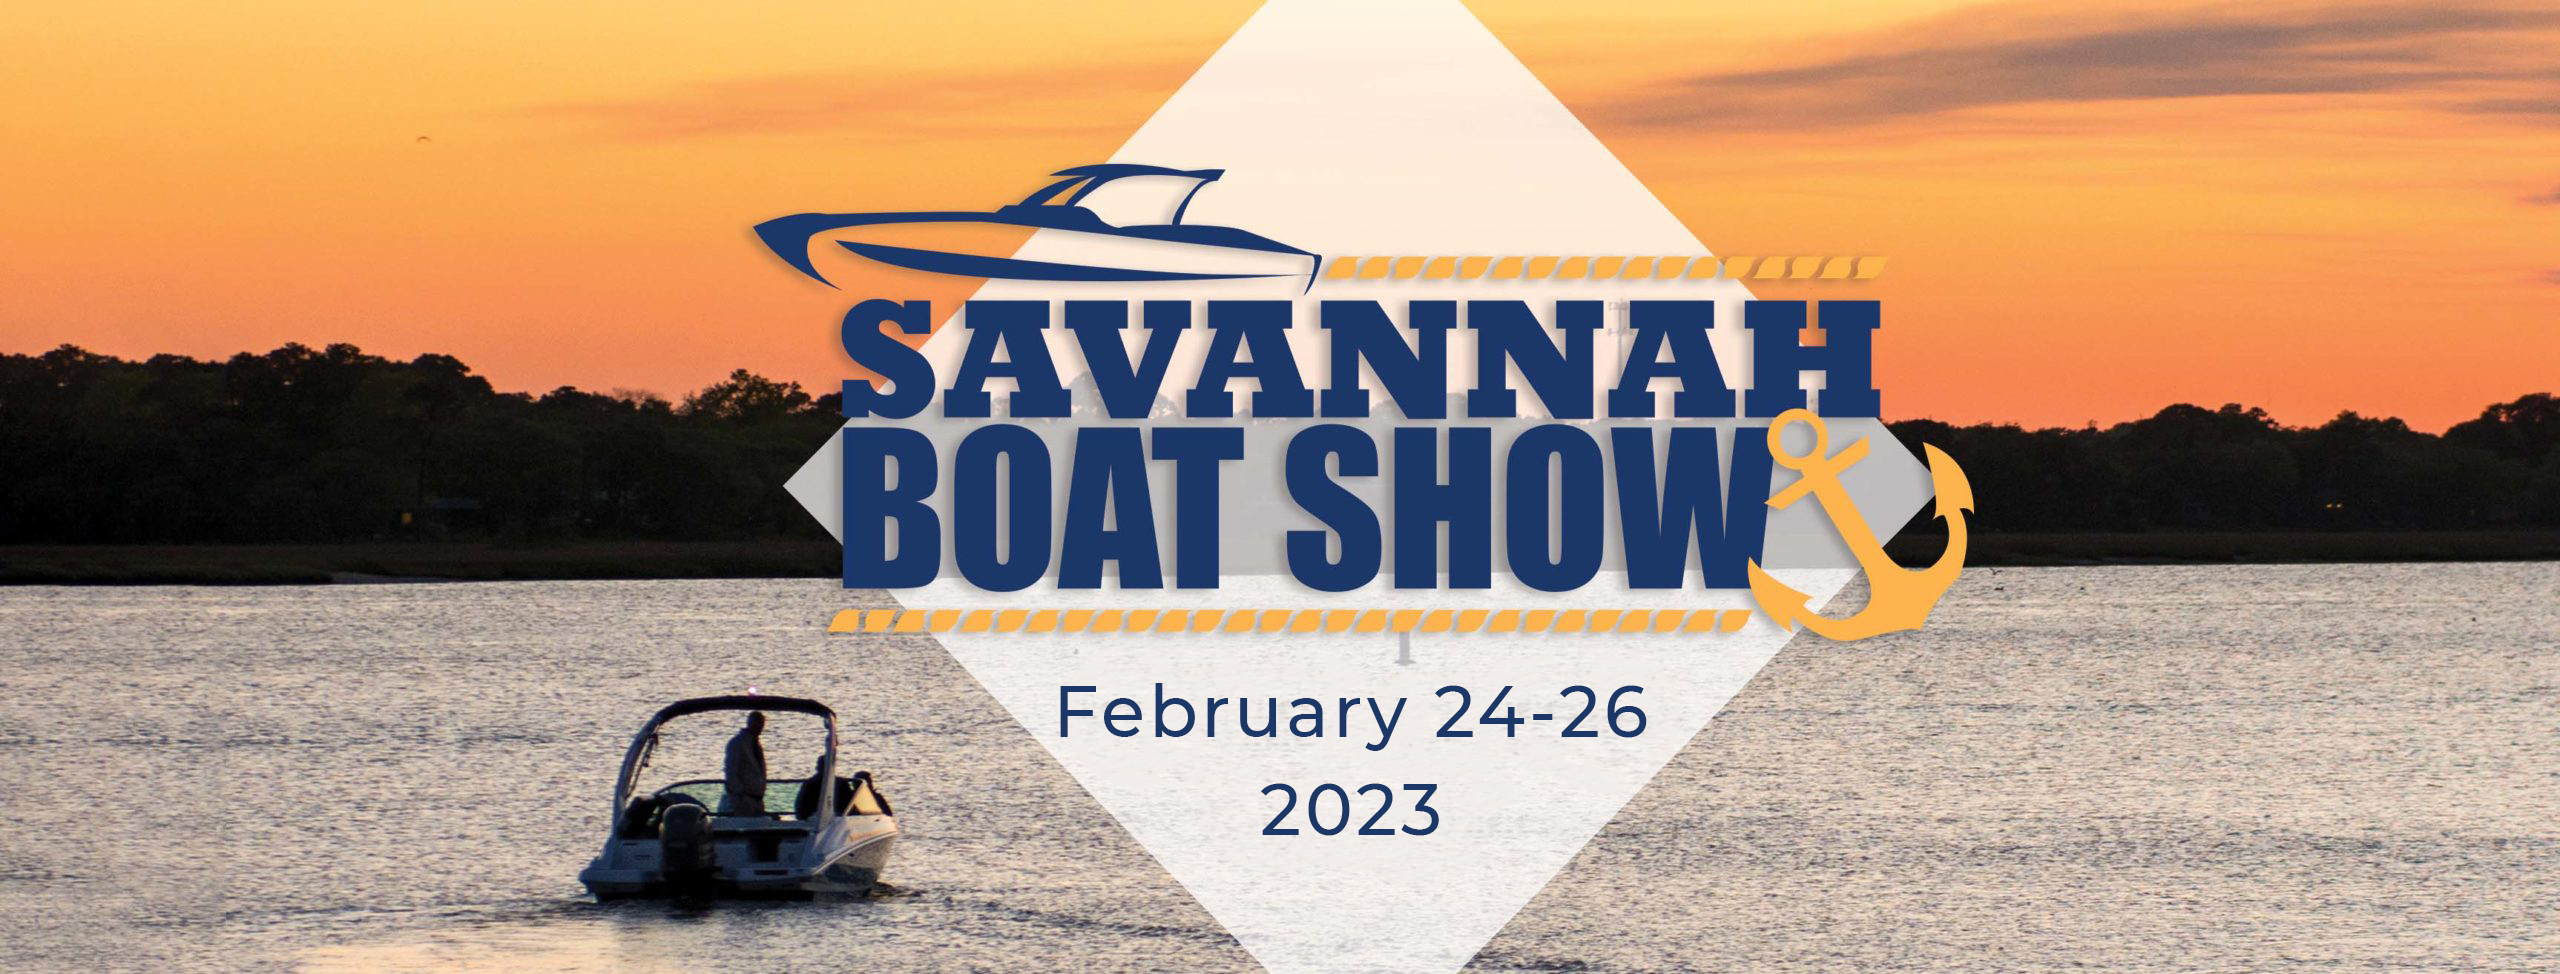 Savannah Boat Show Savannah, GA